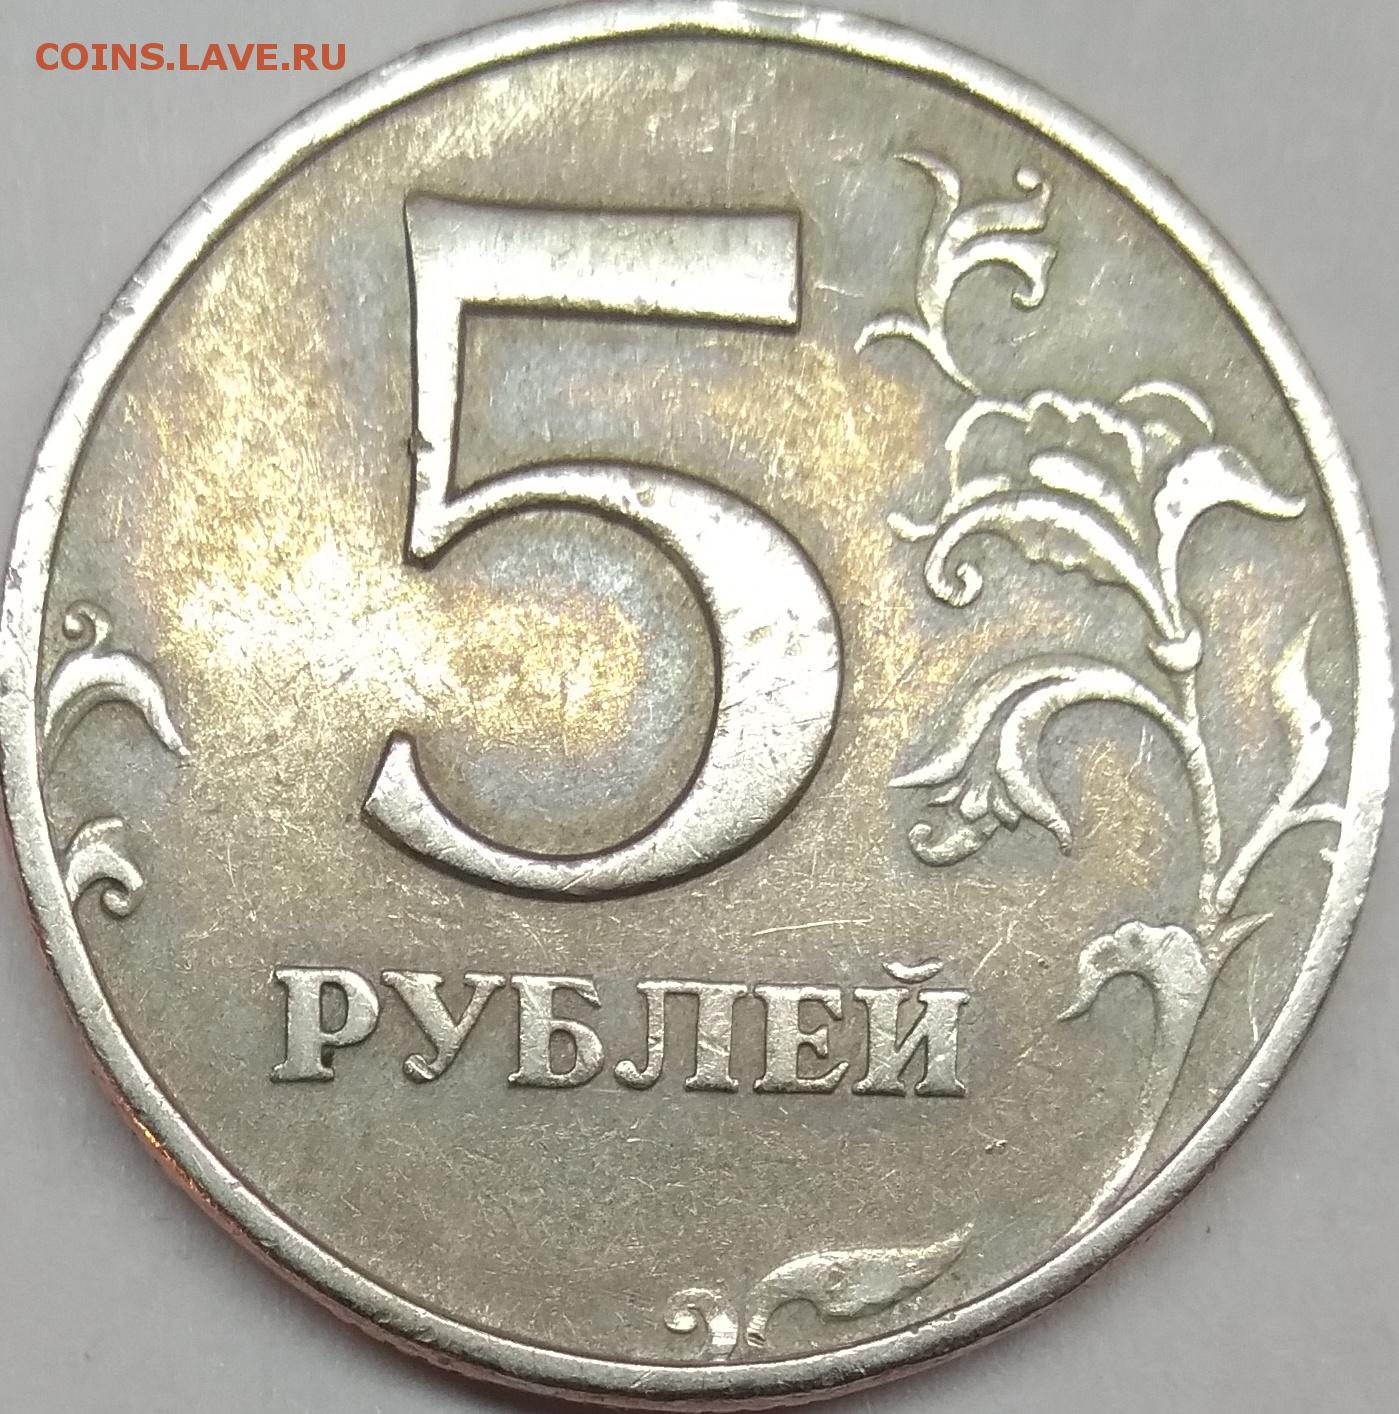 Ценные 5 рублей россии. ММД монеты 1997-1998. 5 Рублей 1997 ММД. Монета 5 рублей 1997 ММД. 5 Рублей 1997 ММД Медно-алюминиевая.